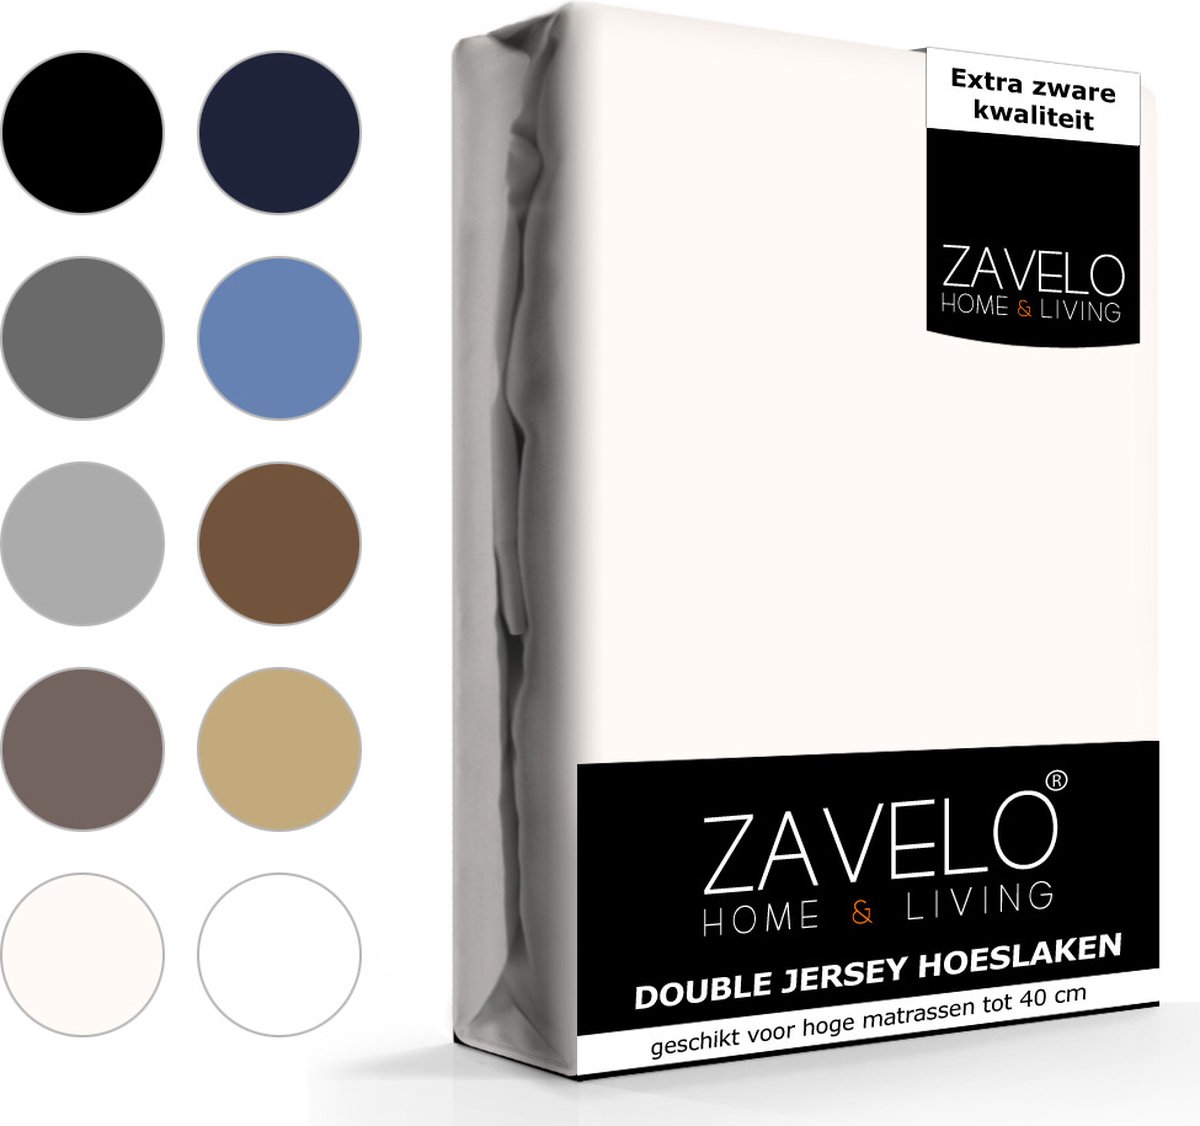 Slaaptextiel Zavelo Double Jersey Hoeslaken Creme-1-persoons (90x220 Cm) - Beige